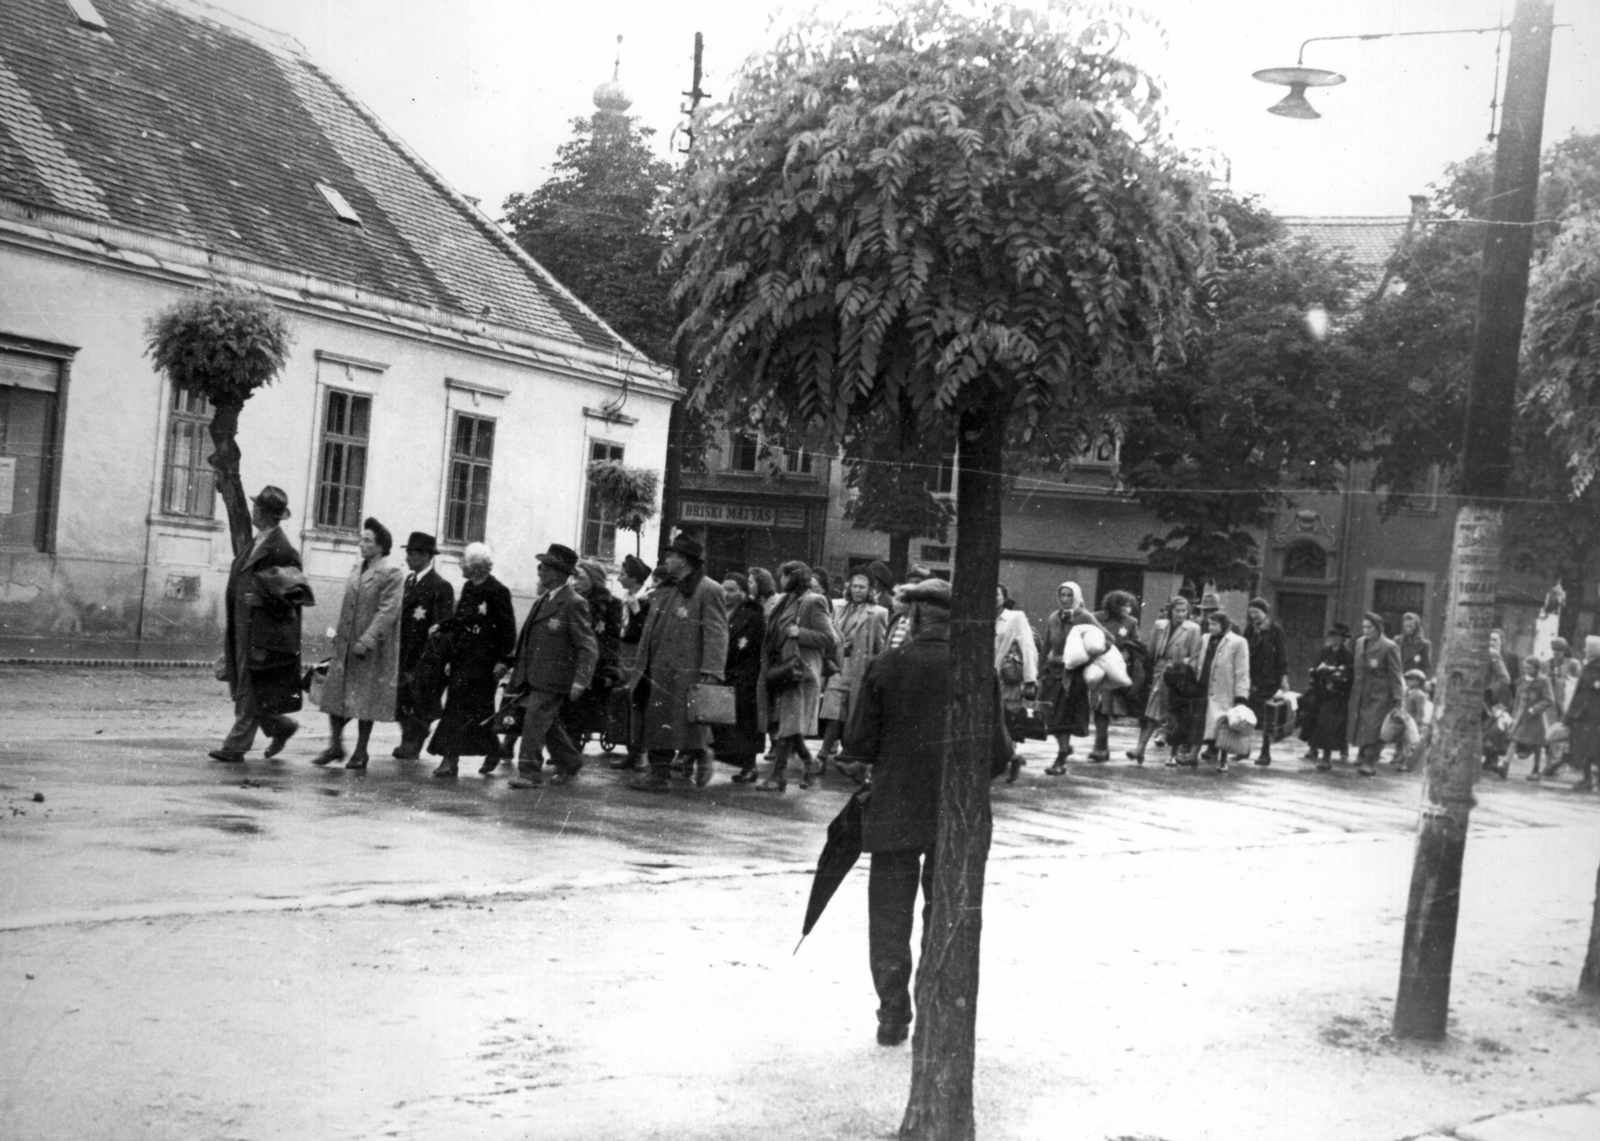 Magyarország, Kőszeg, Kossuth Lajos utca, háttérben a Fő tér házsora. Zsidók gyalogmenete a Schey Fülöp utcai gettóból a vasútállomásra 1944. június 18-án. A szombathelyi gettóba történő átszállításuk után, 1944. július 4-én, Auschwitzba deportálták a foglyokat., 1944, Fortepan, holokauszt, zsidóság, zsidóüldözés, Fortepan #200858